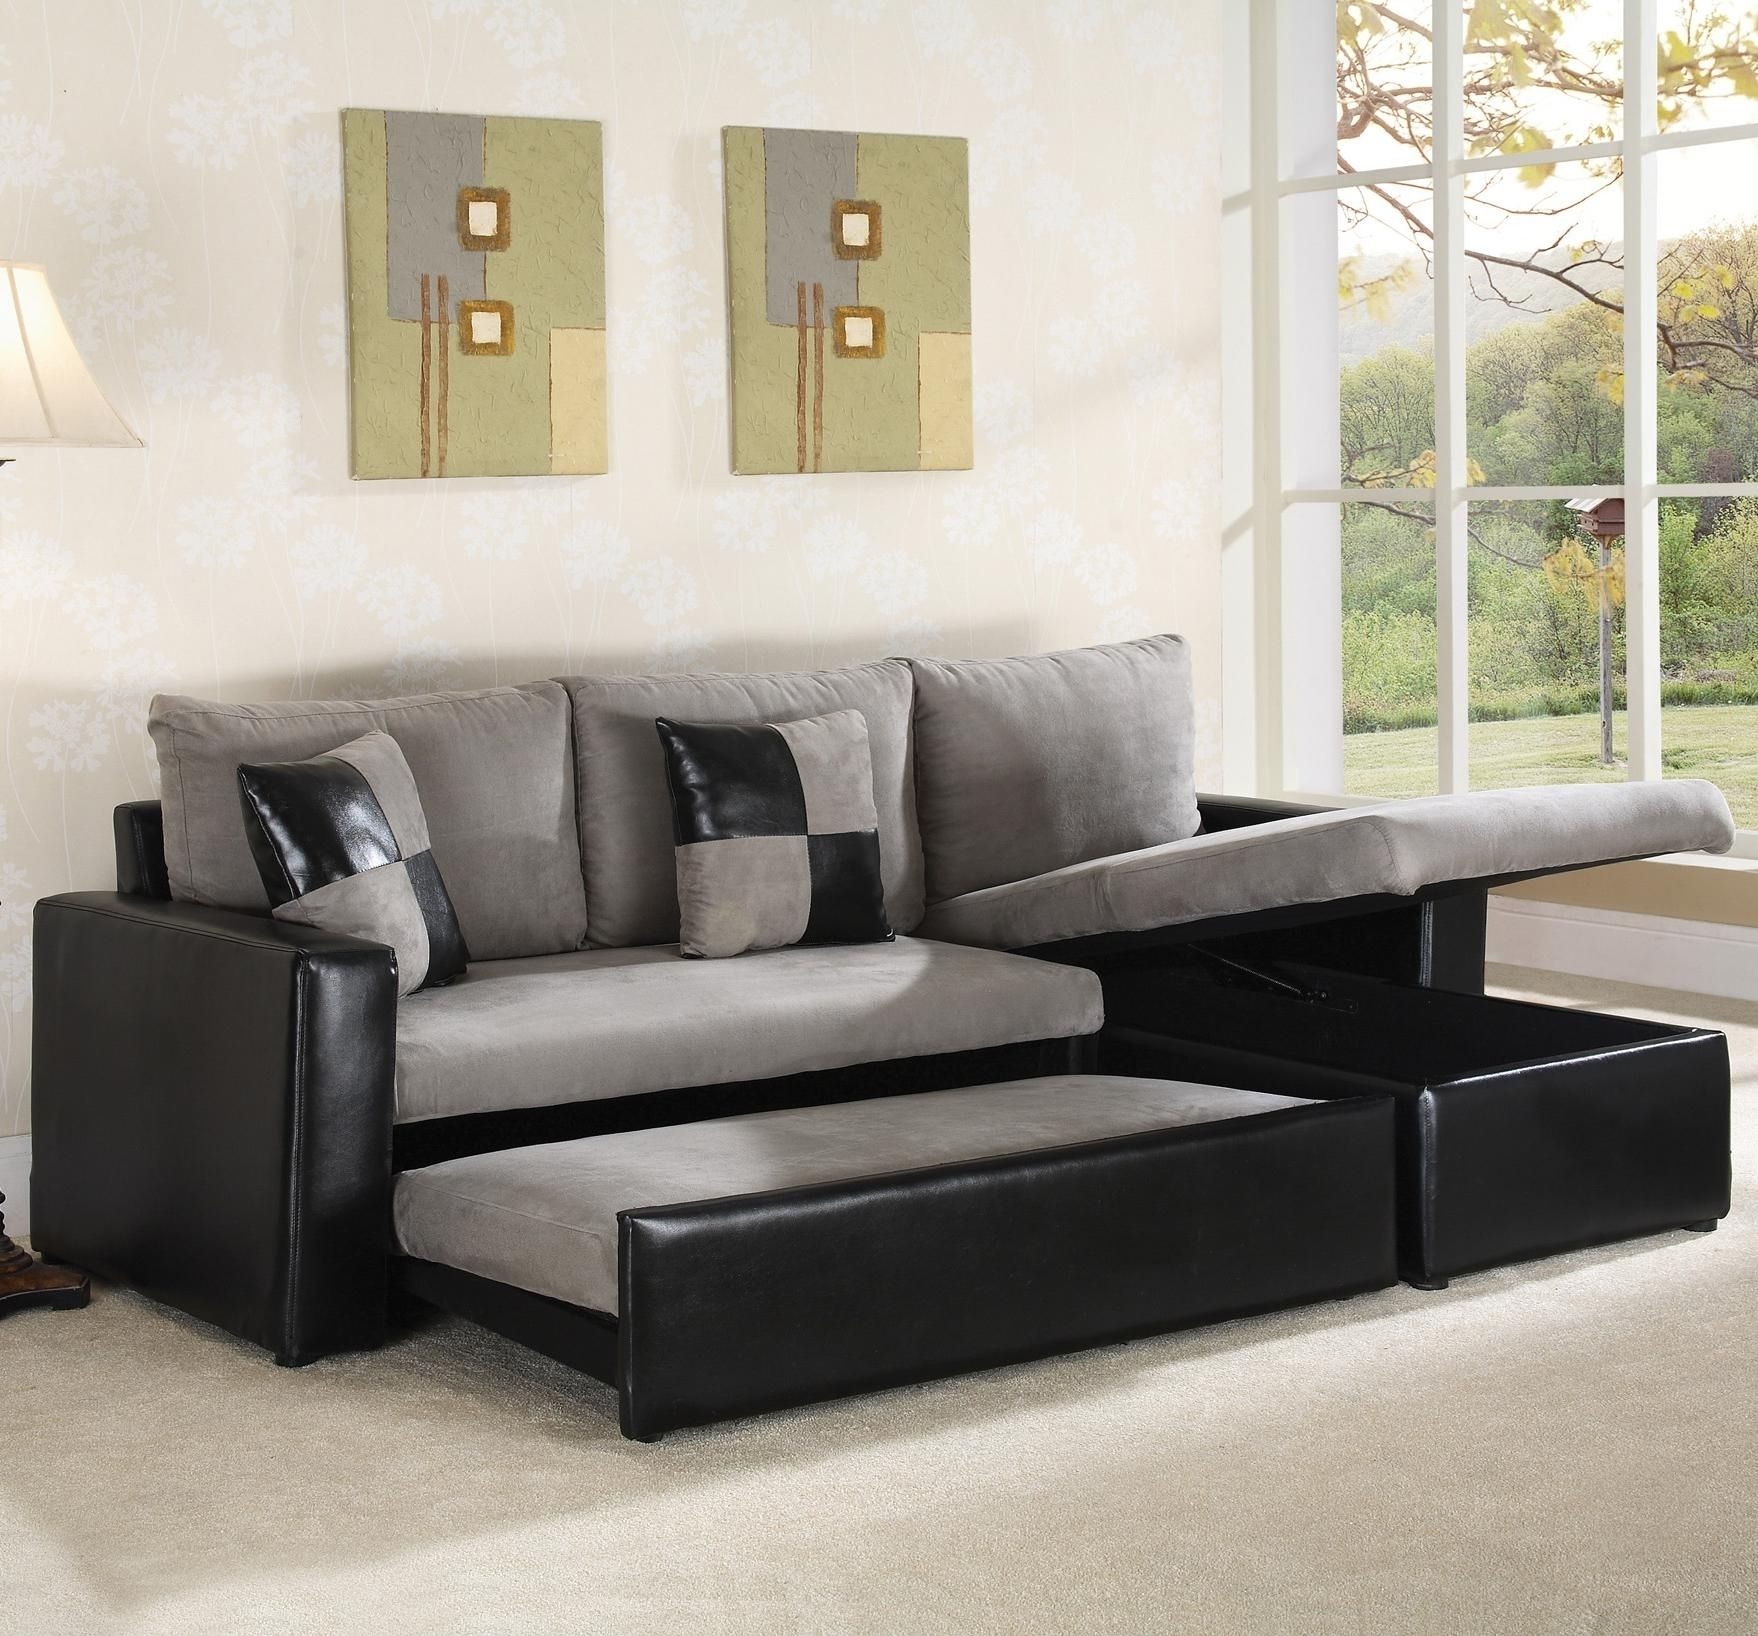 American Leather Sleeper Sofa Craigslist Ansugallery Pertaining To Craigslist Sleeper Sofa (View 5 of 12)